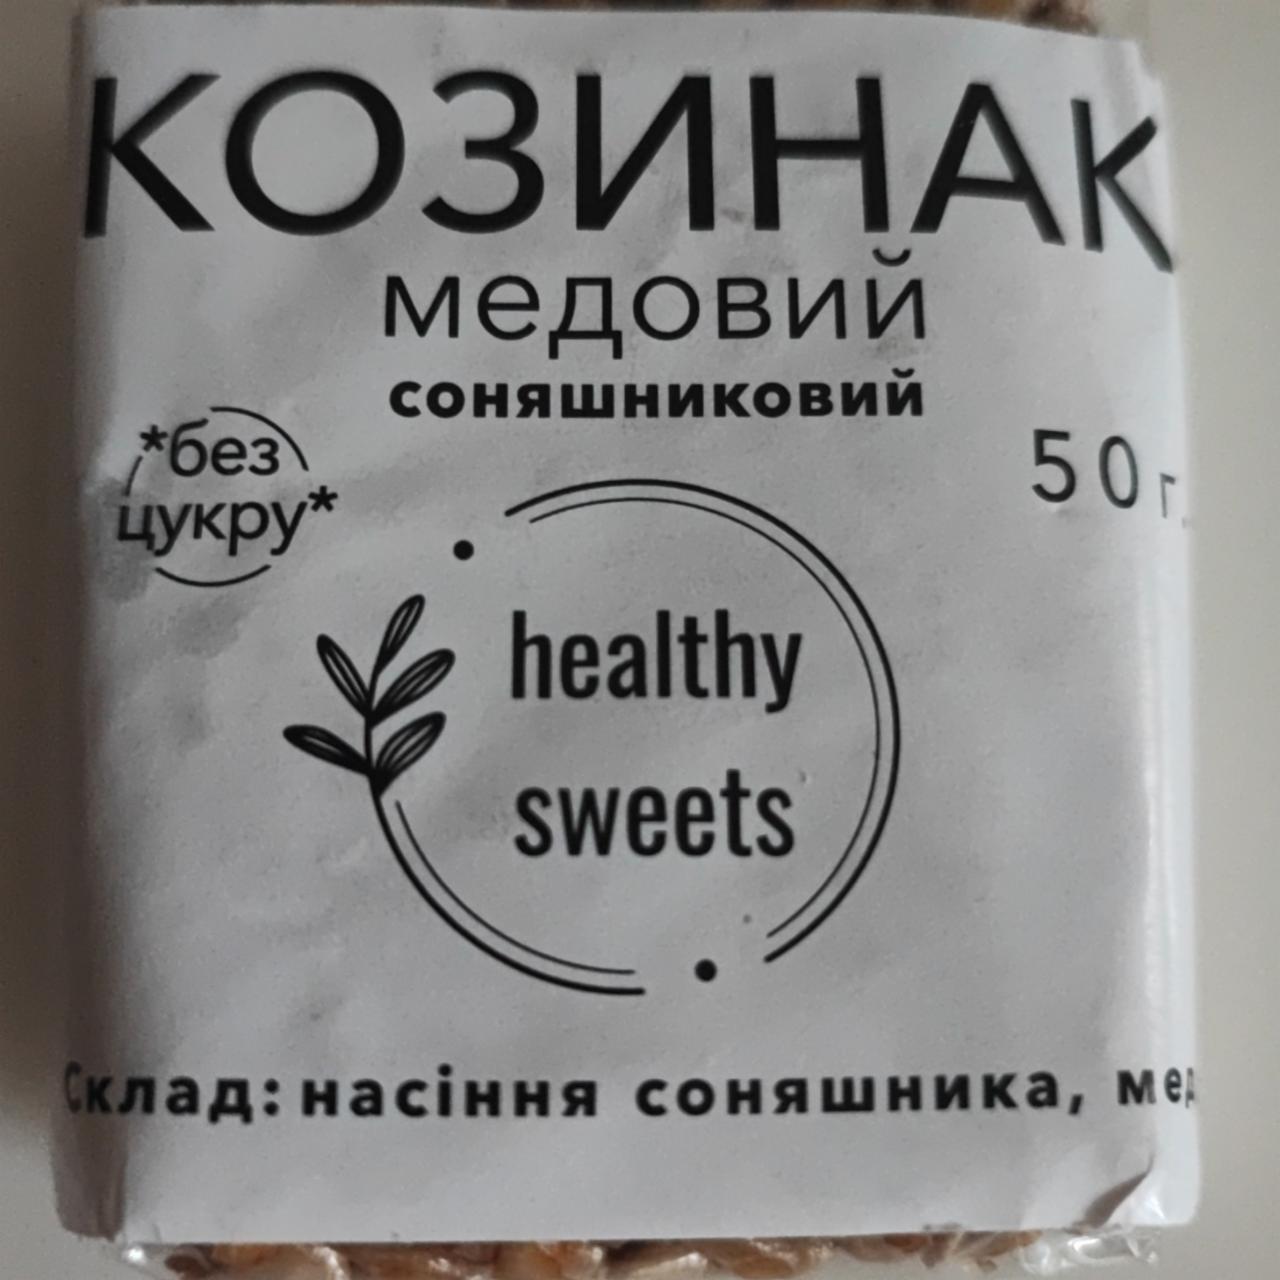 Фото - Козинак медовий Соняшниковий без цукру Healthy Sweets